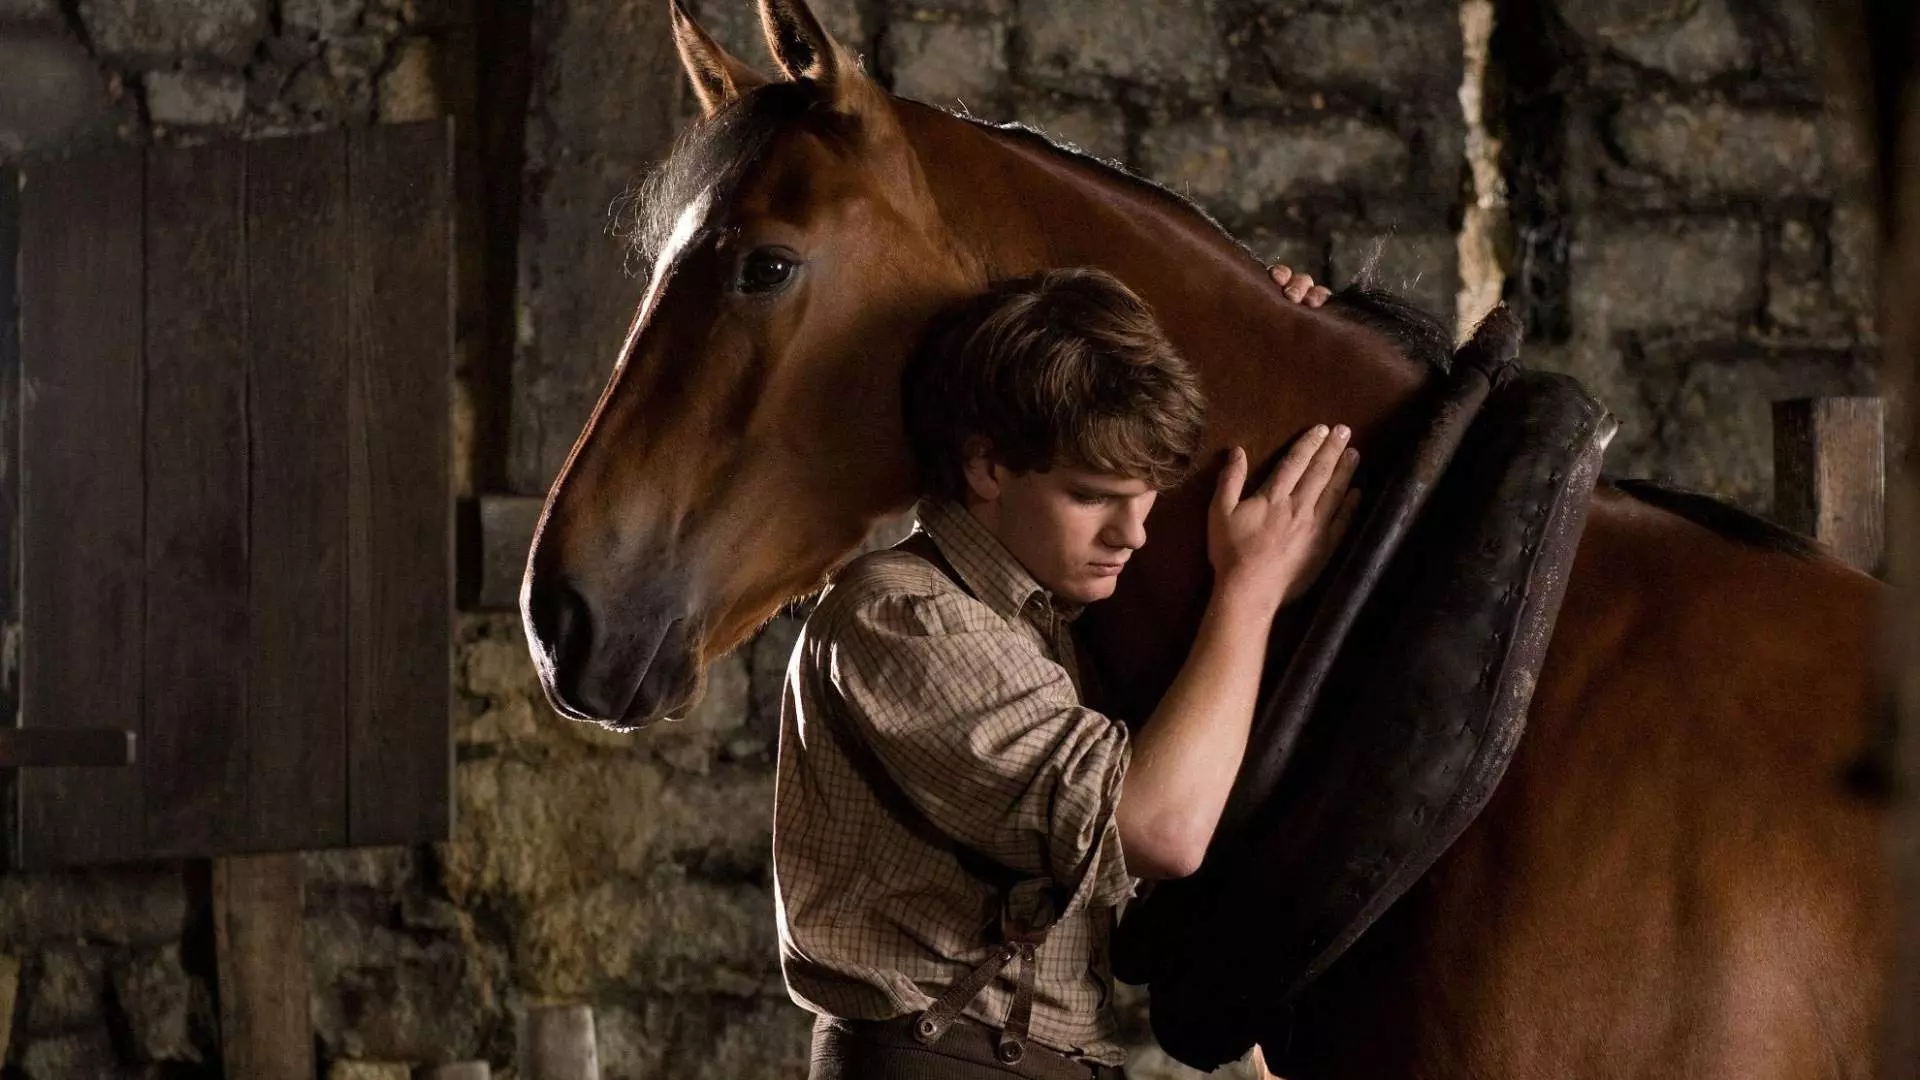 جرمی ایروین در فیلم War Horse اسبی را بغل کرده است